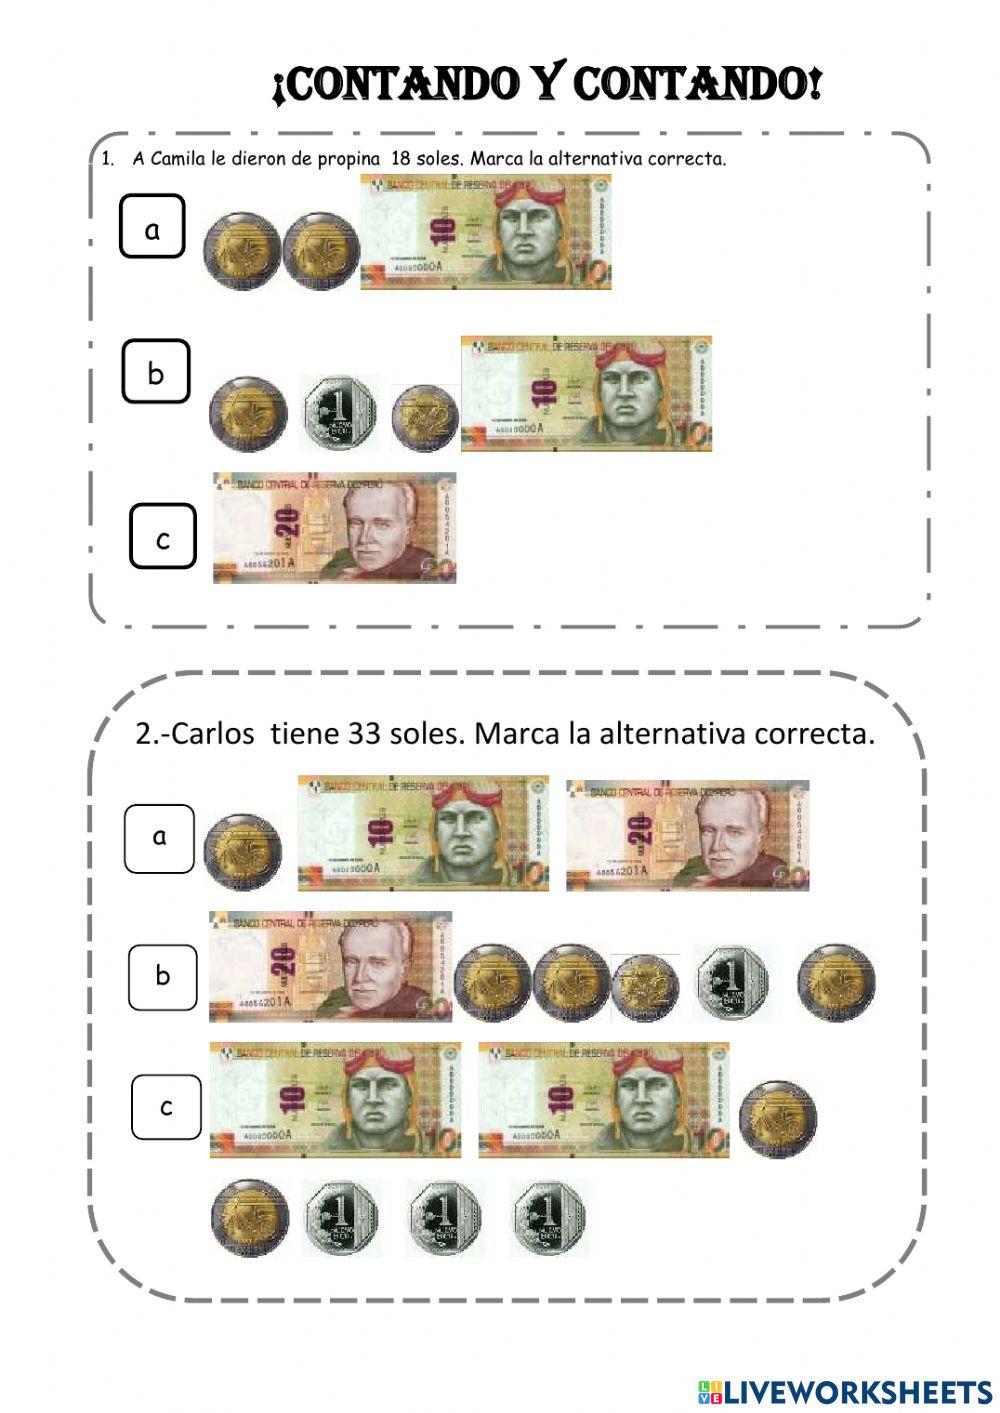 Monedas y billetes